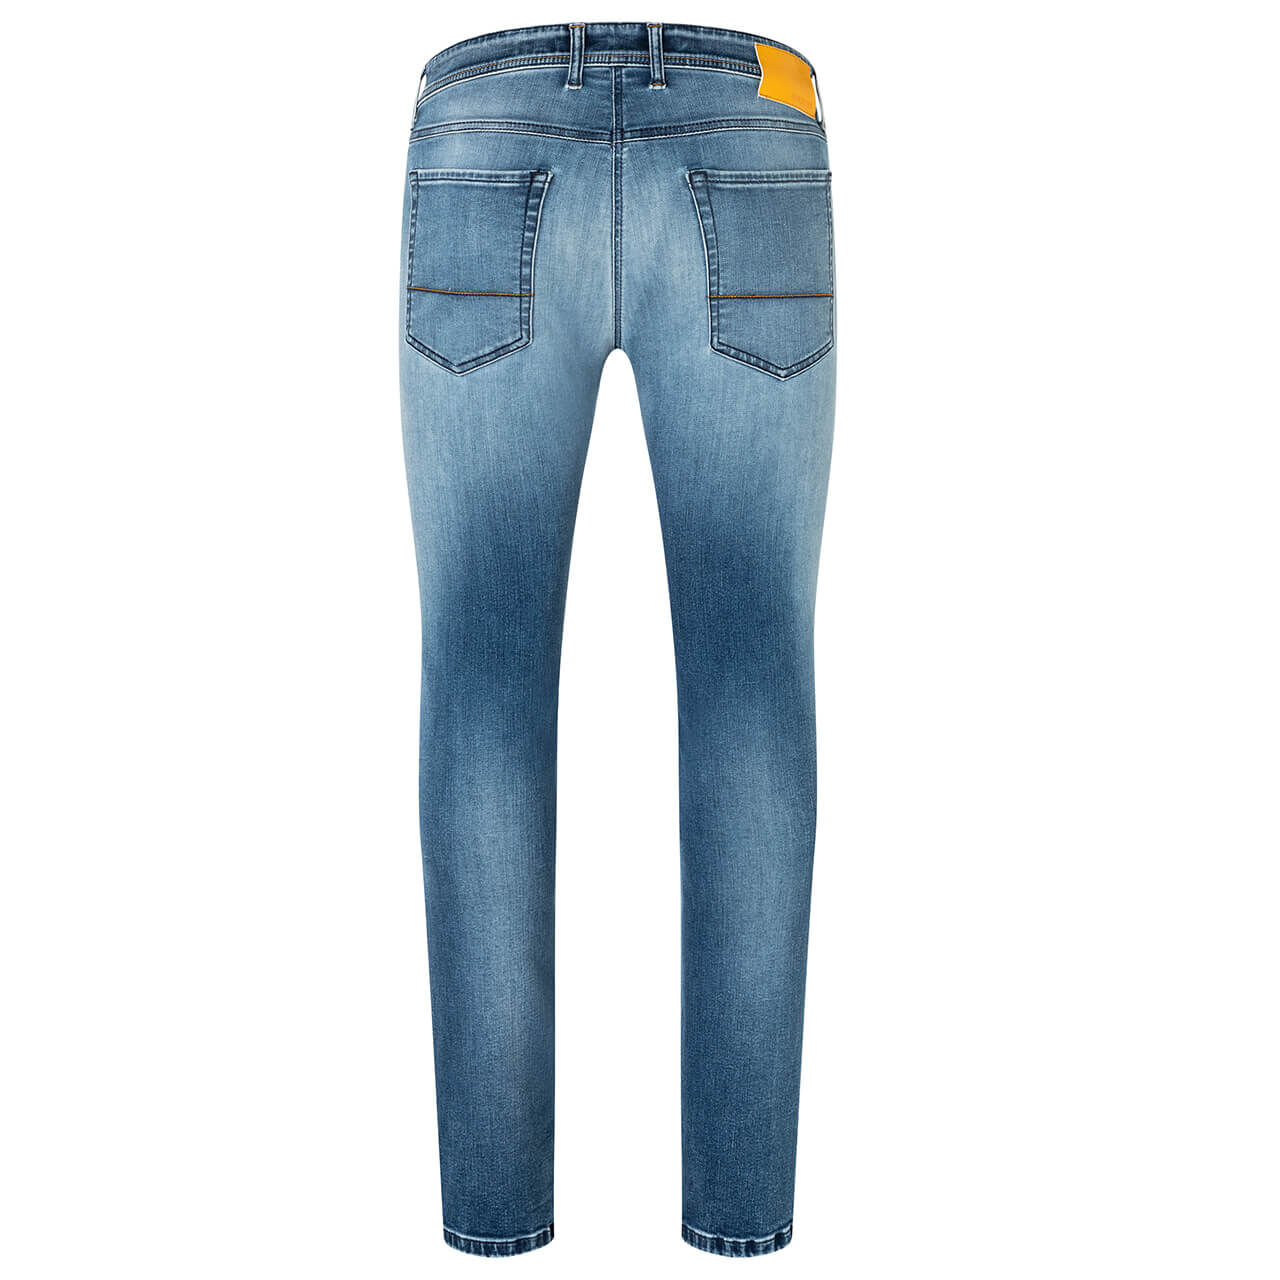 MAC Jeans Flexx für Herren in Hellblau verwaschen, FarbNr.: H239